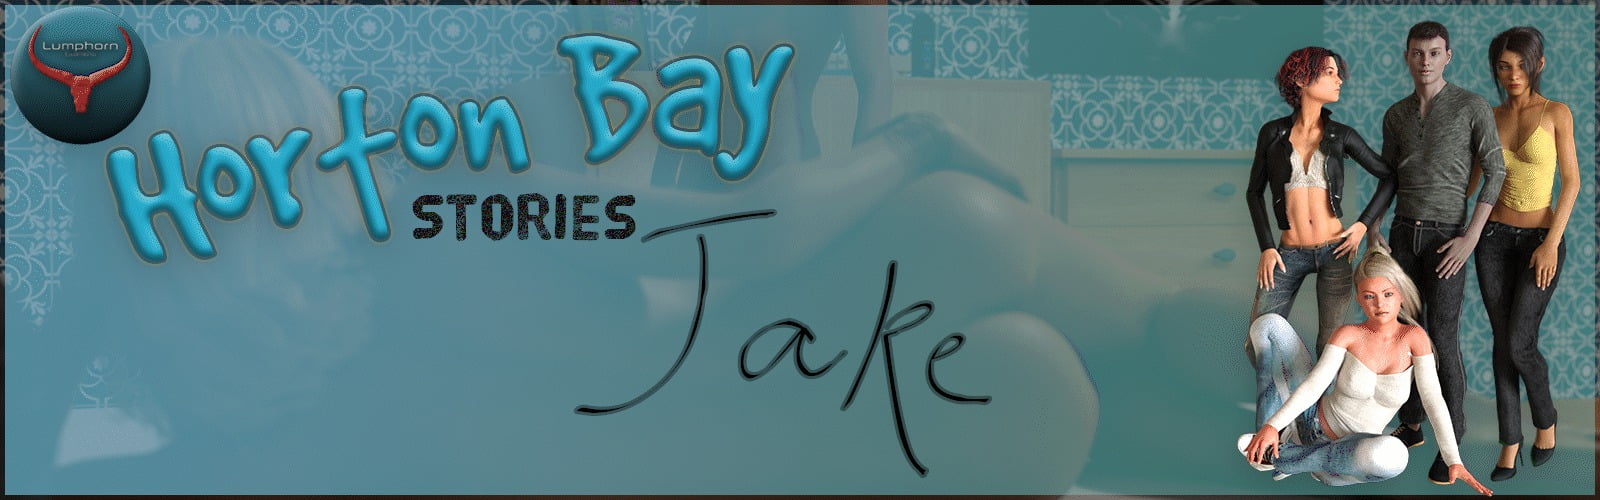 Horton Bay Stories Jake Lumphorn Game